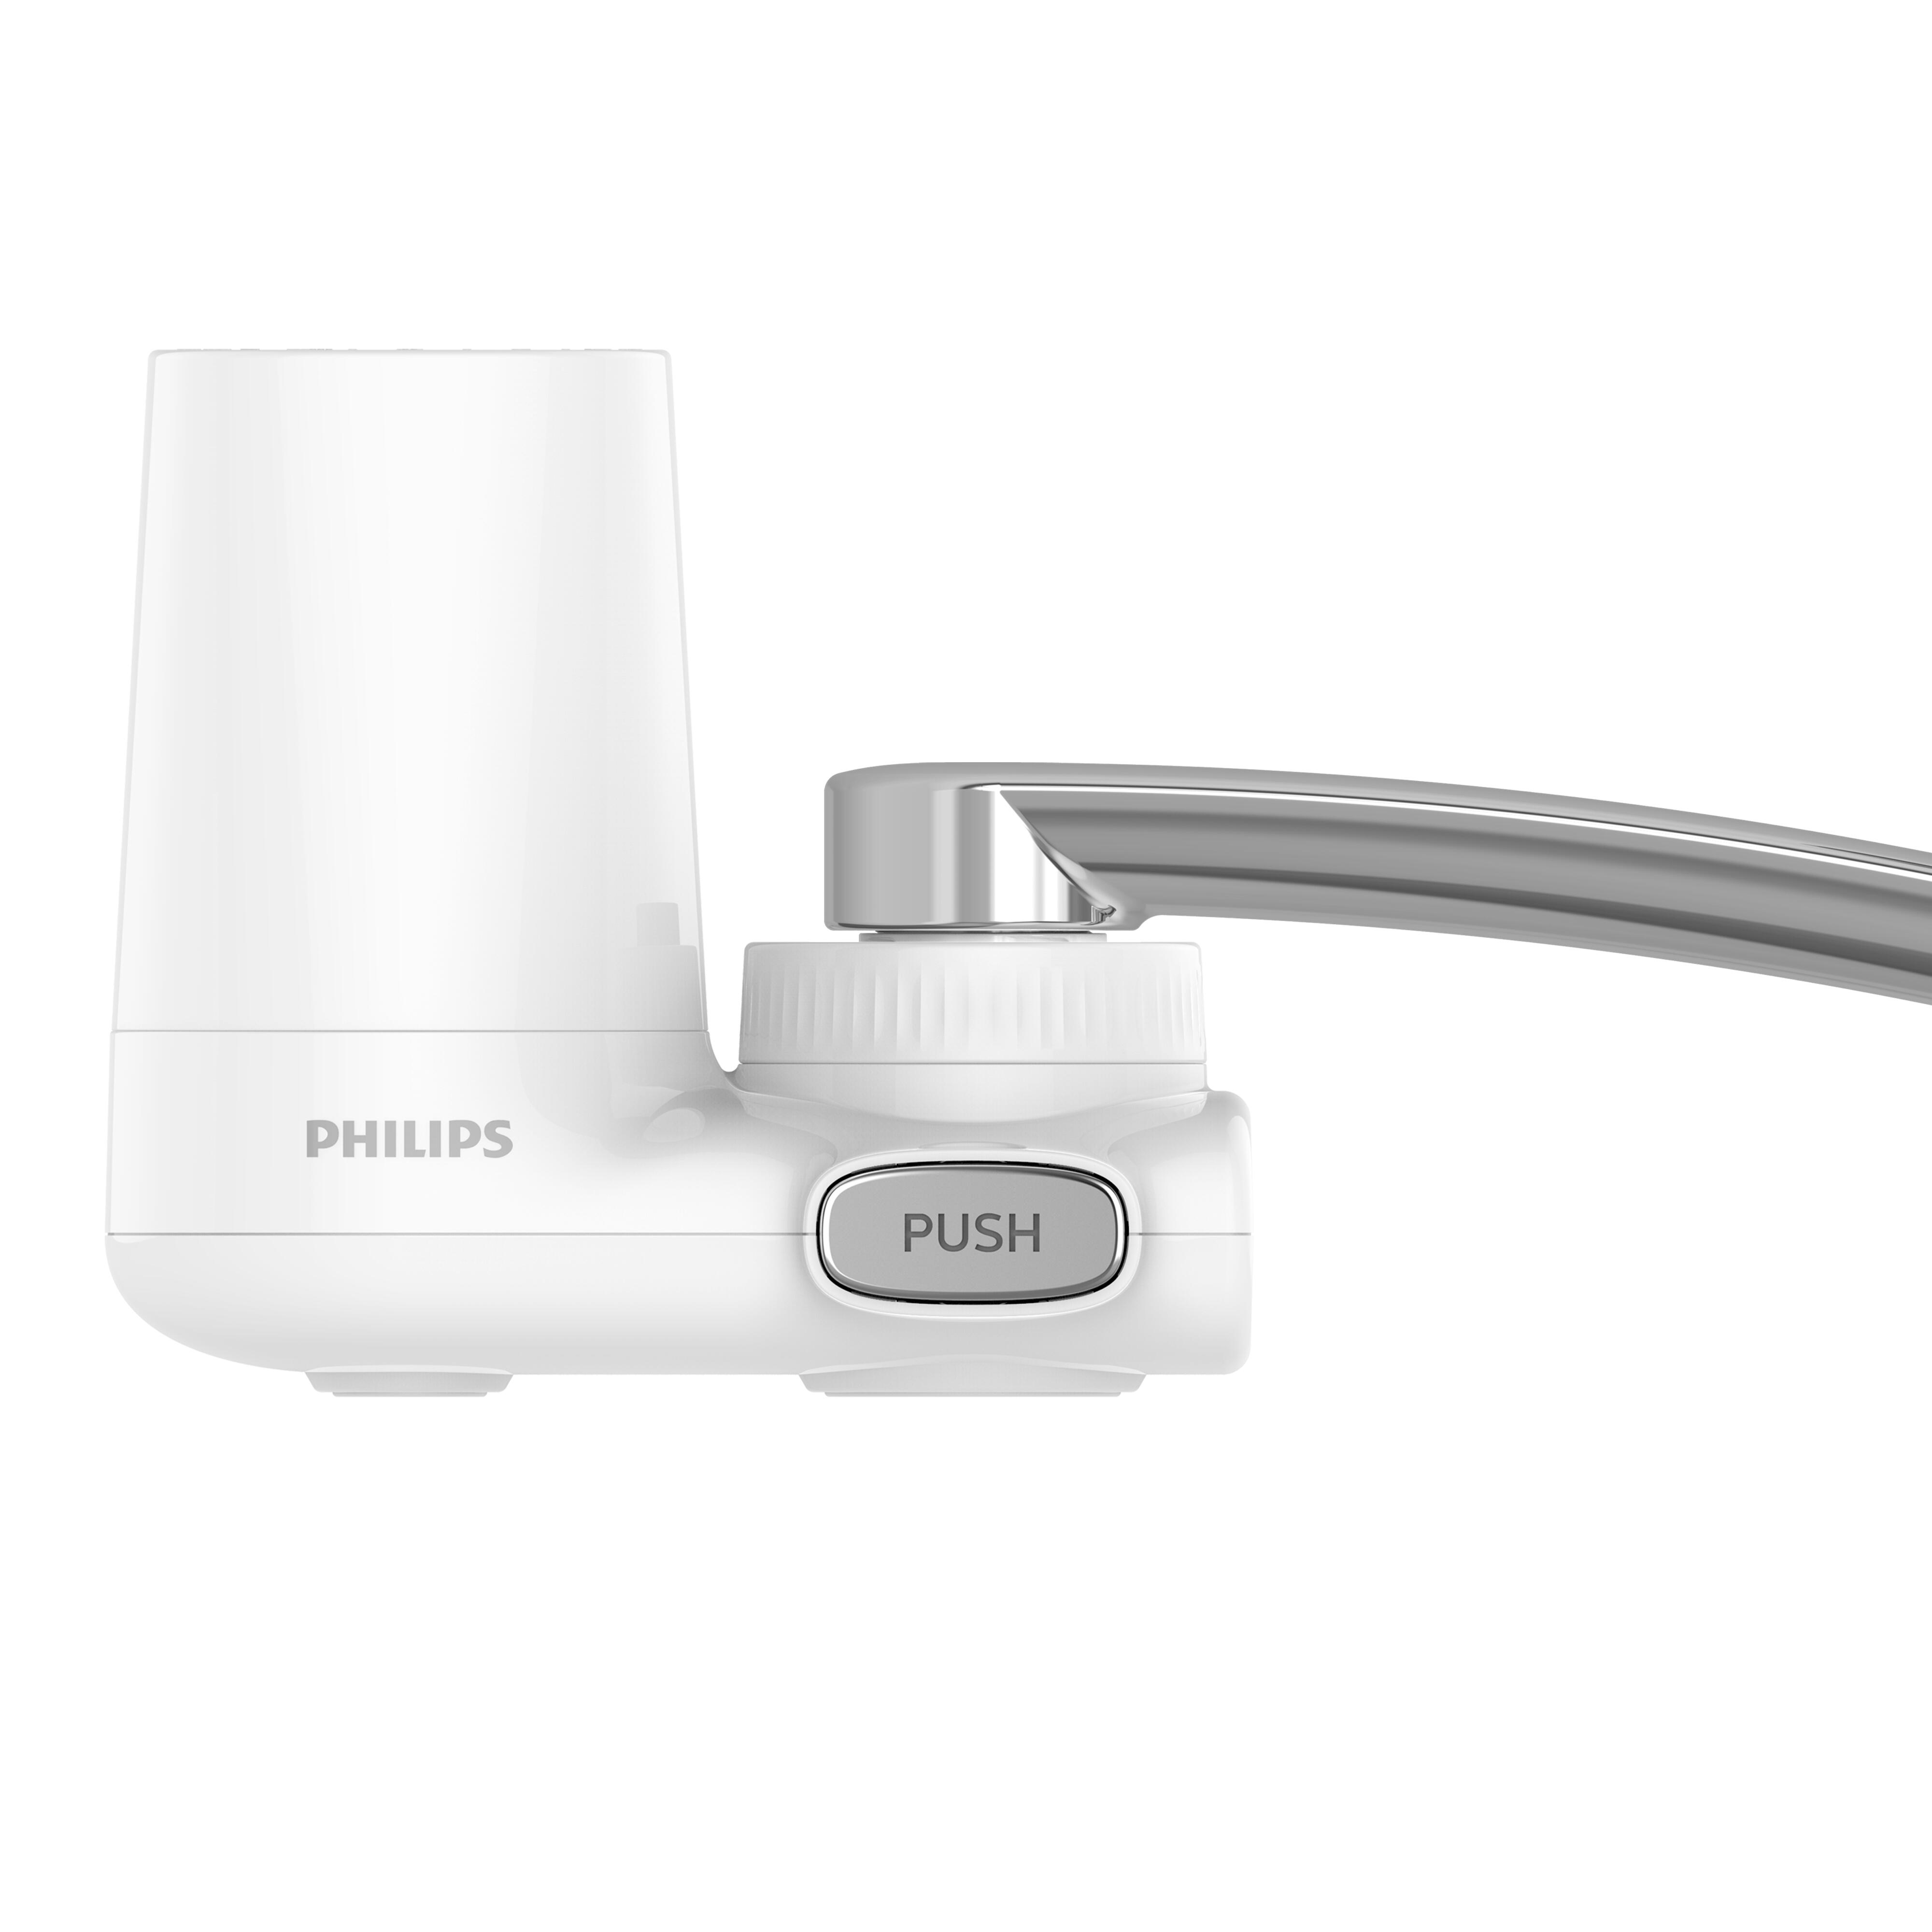 Filtro de ducha en línea – Philips de segunda mano por 14,99 EUR